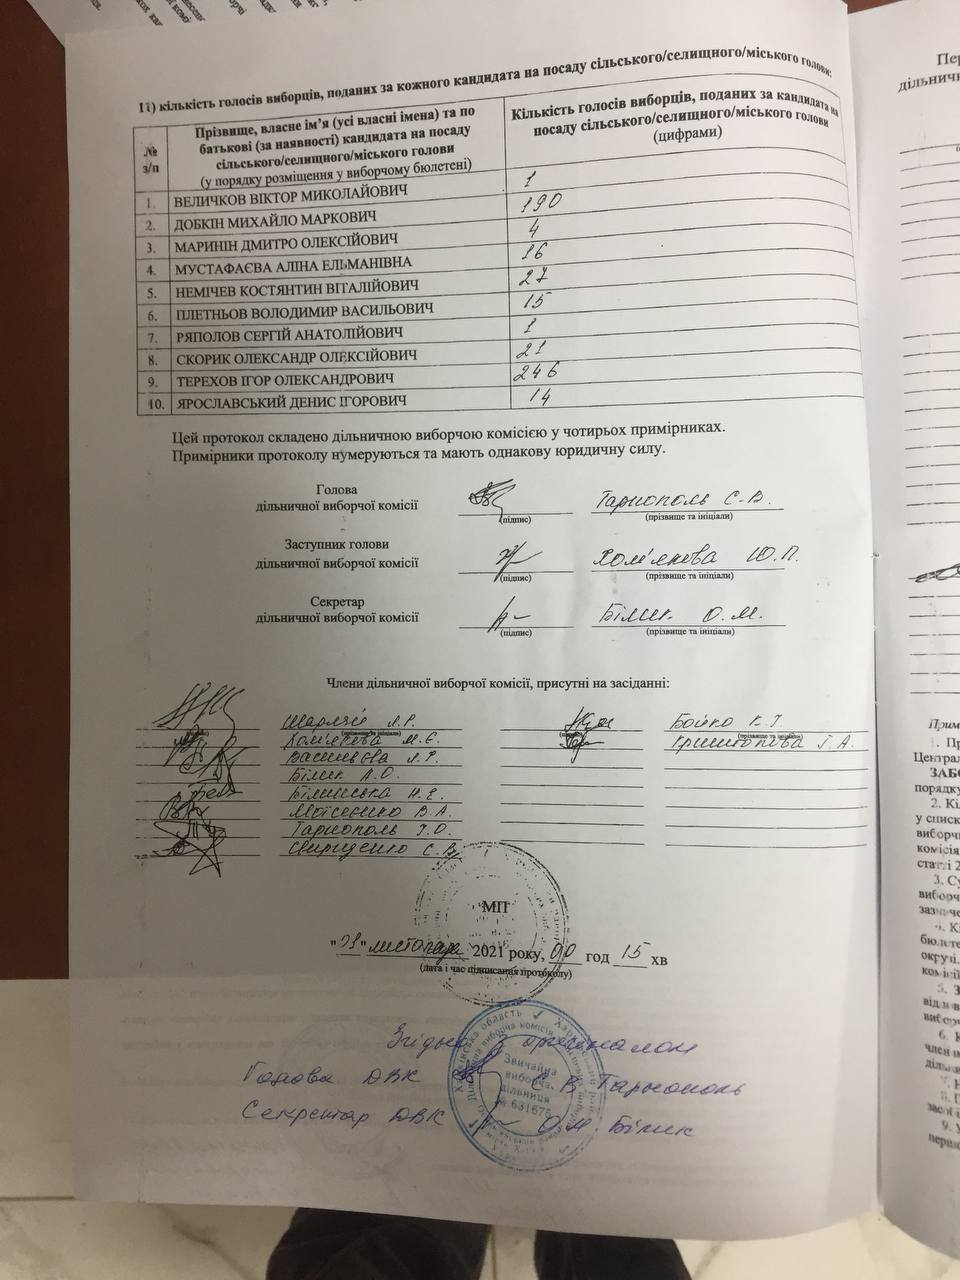 ОПОРА заявила о фальсификации протокола на выборах мэра Харькова